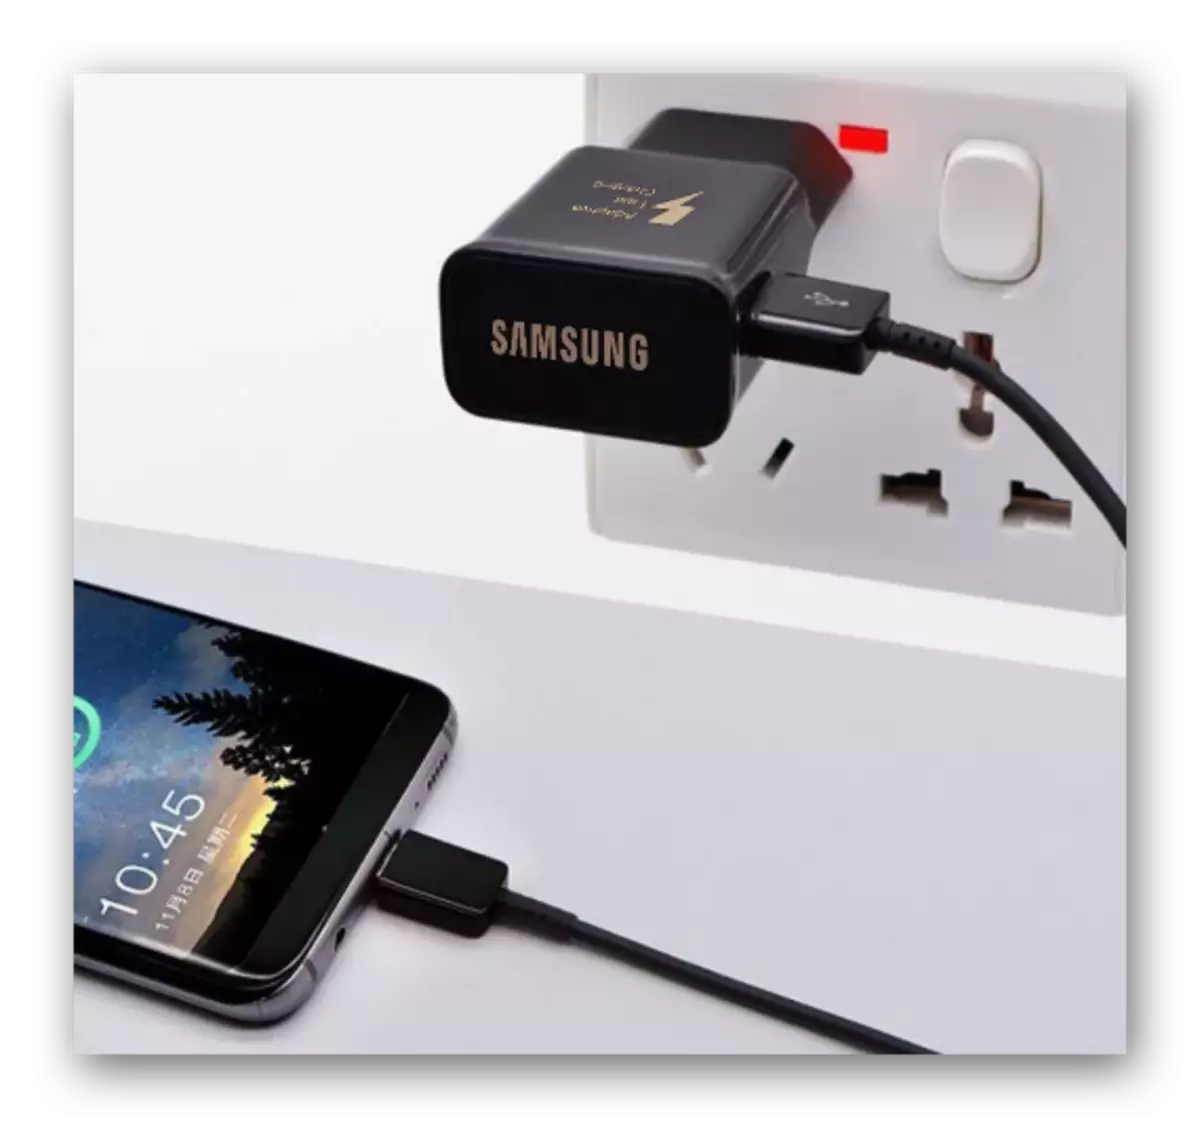 Collegare il dispositivo Samsung al caricabatterie